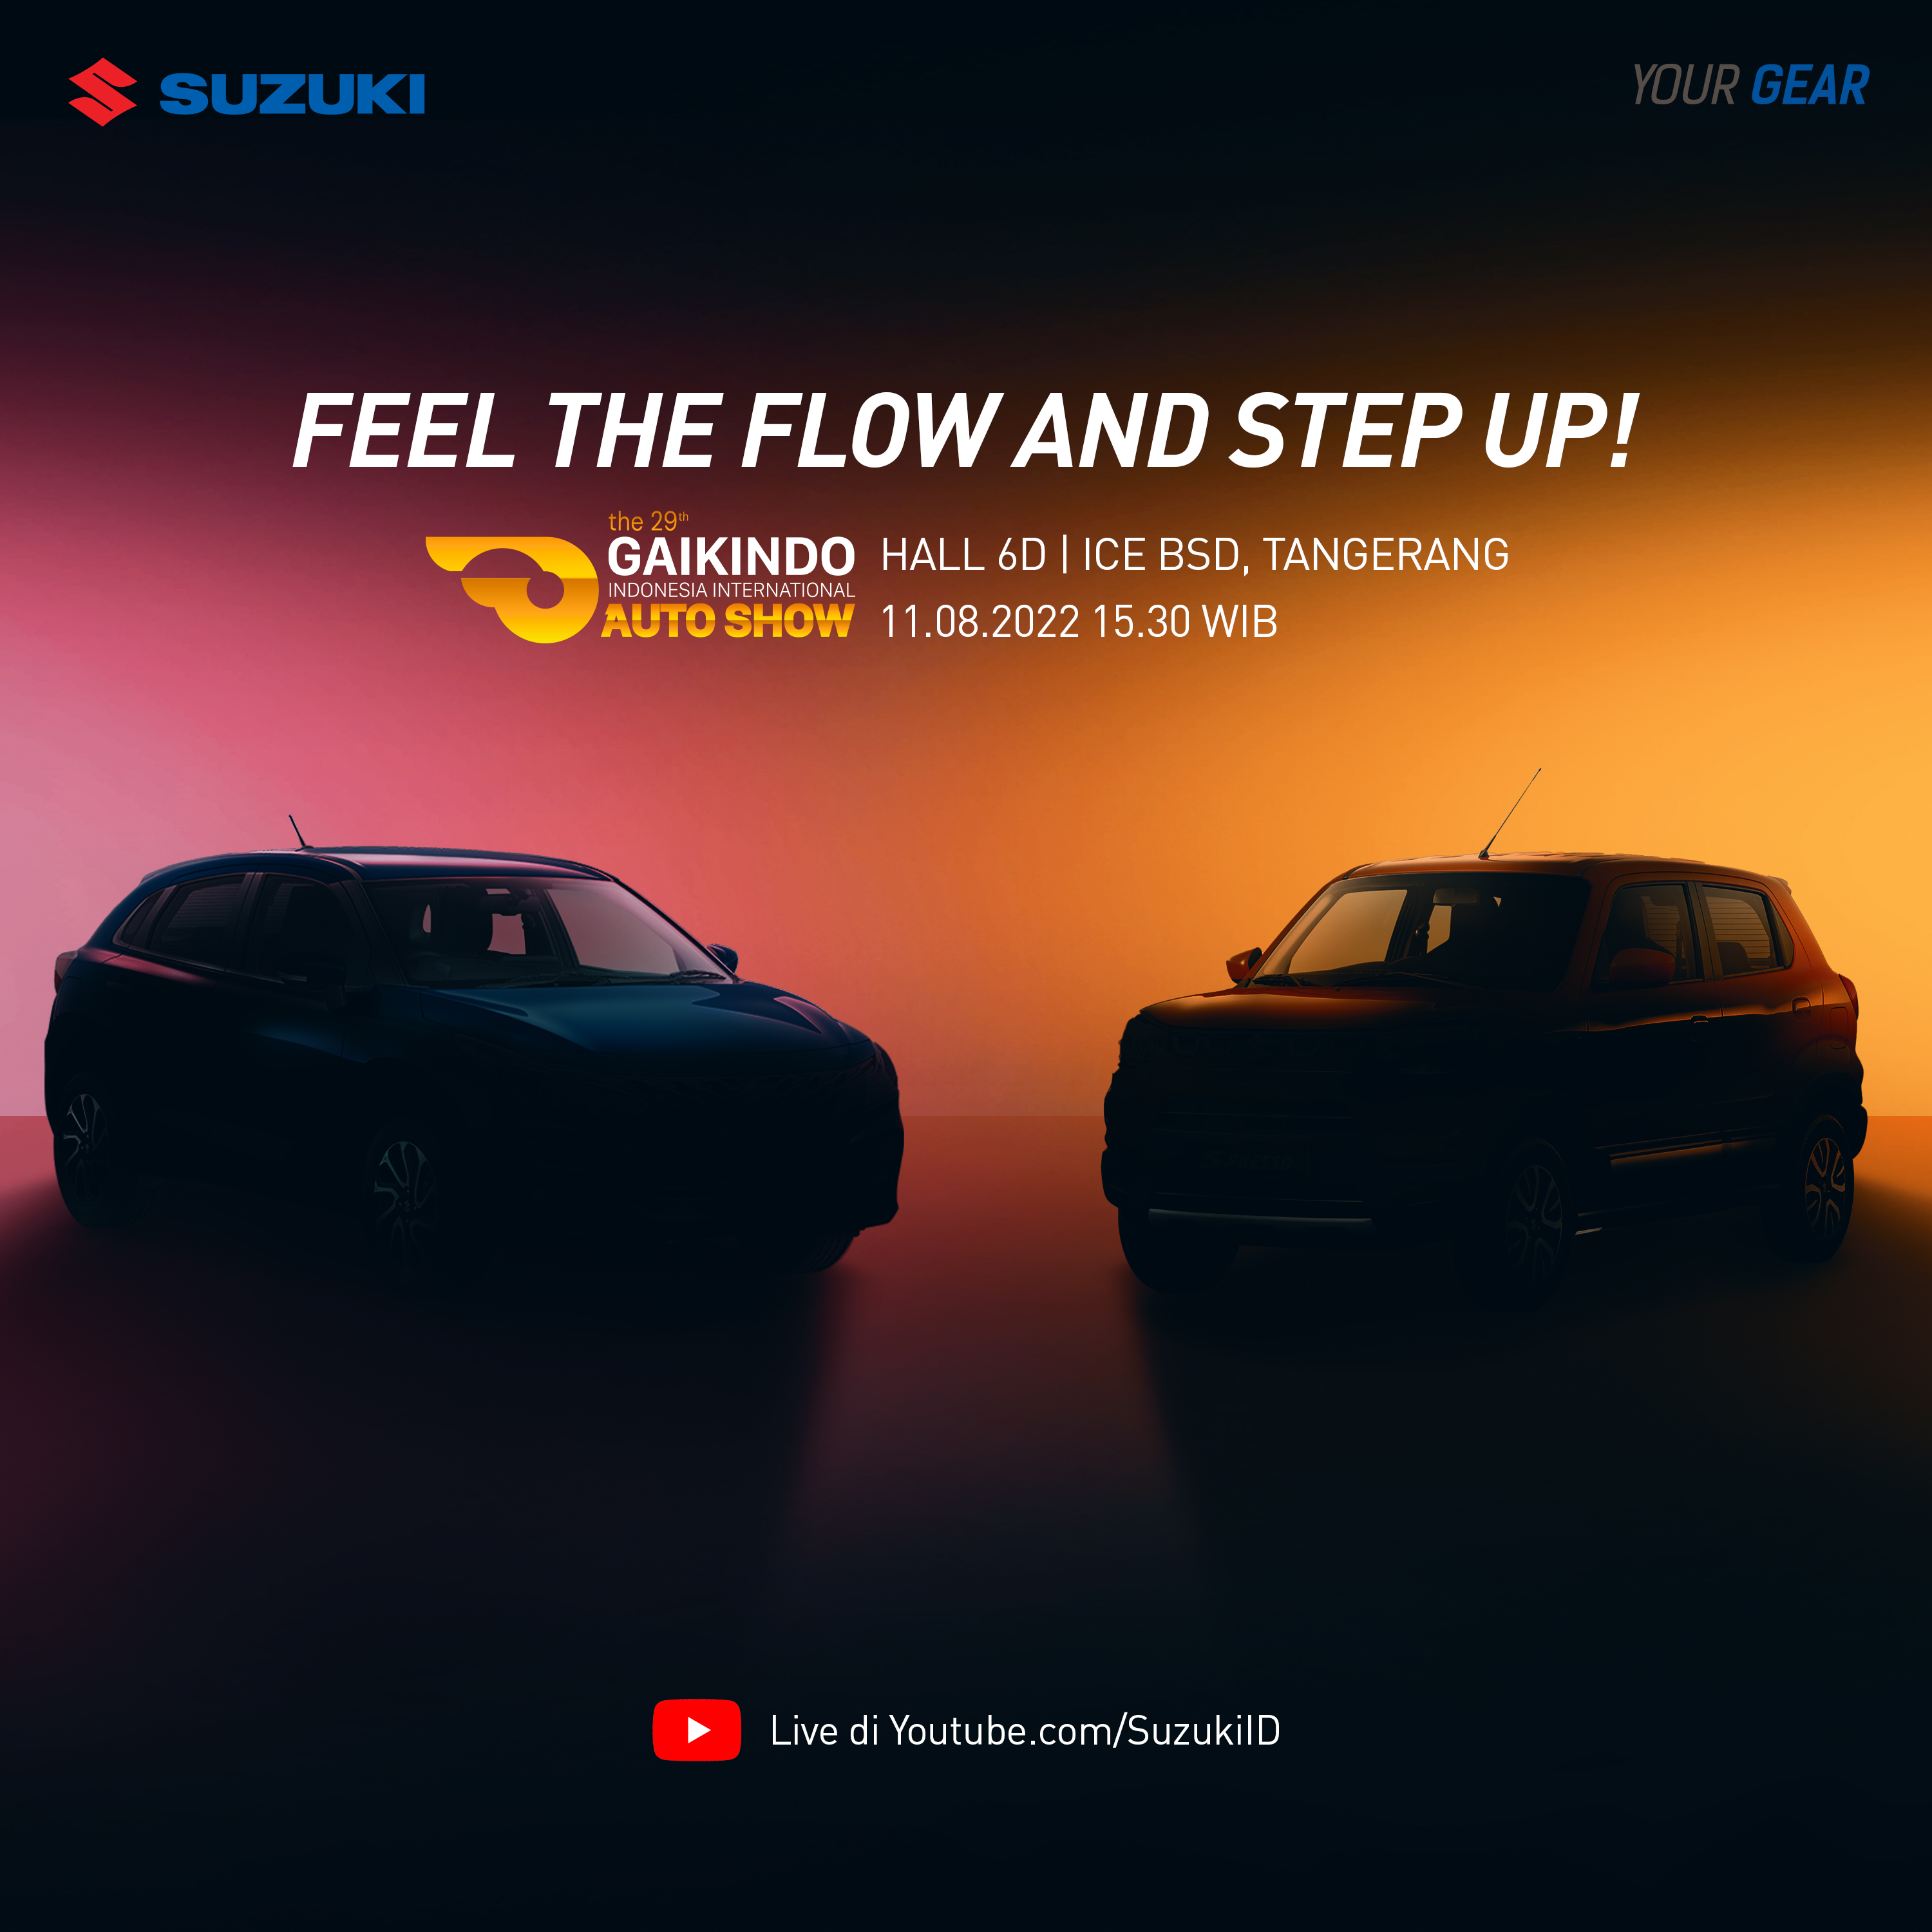 New Product of Suzuki